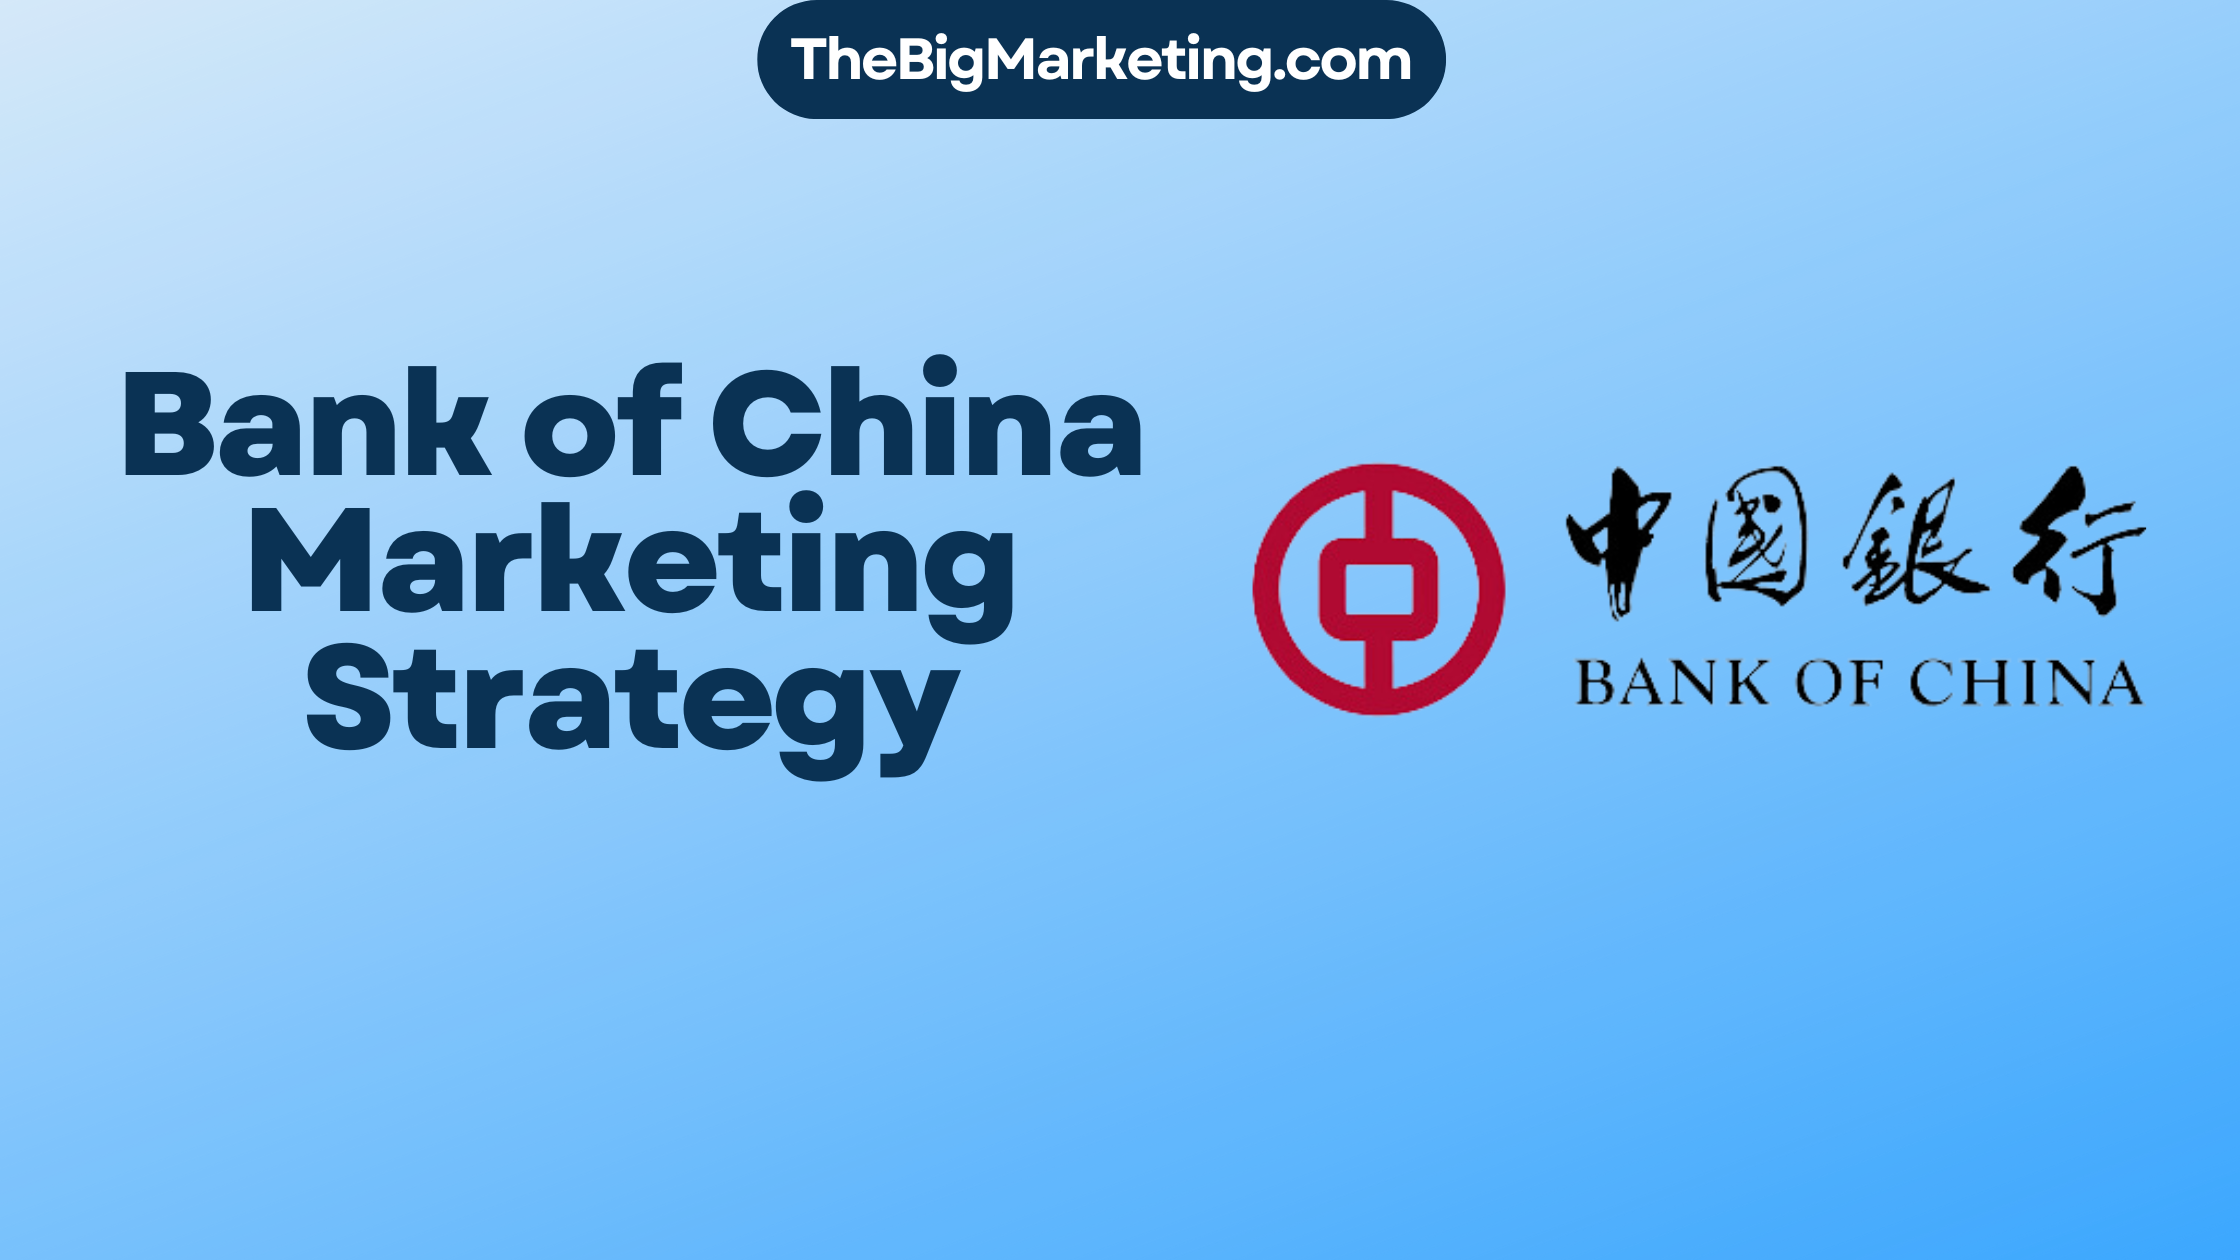 Bank of China Marketing Strategy